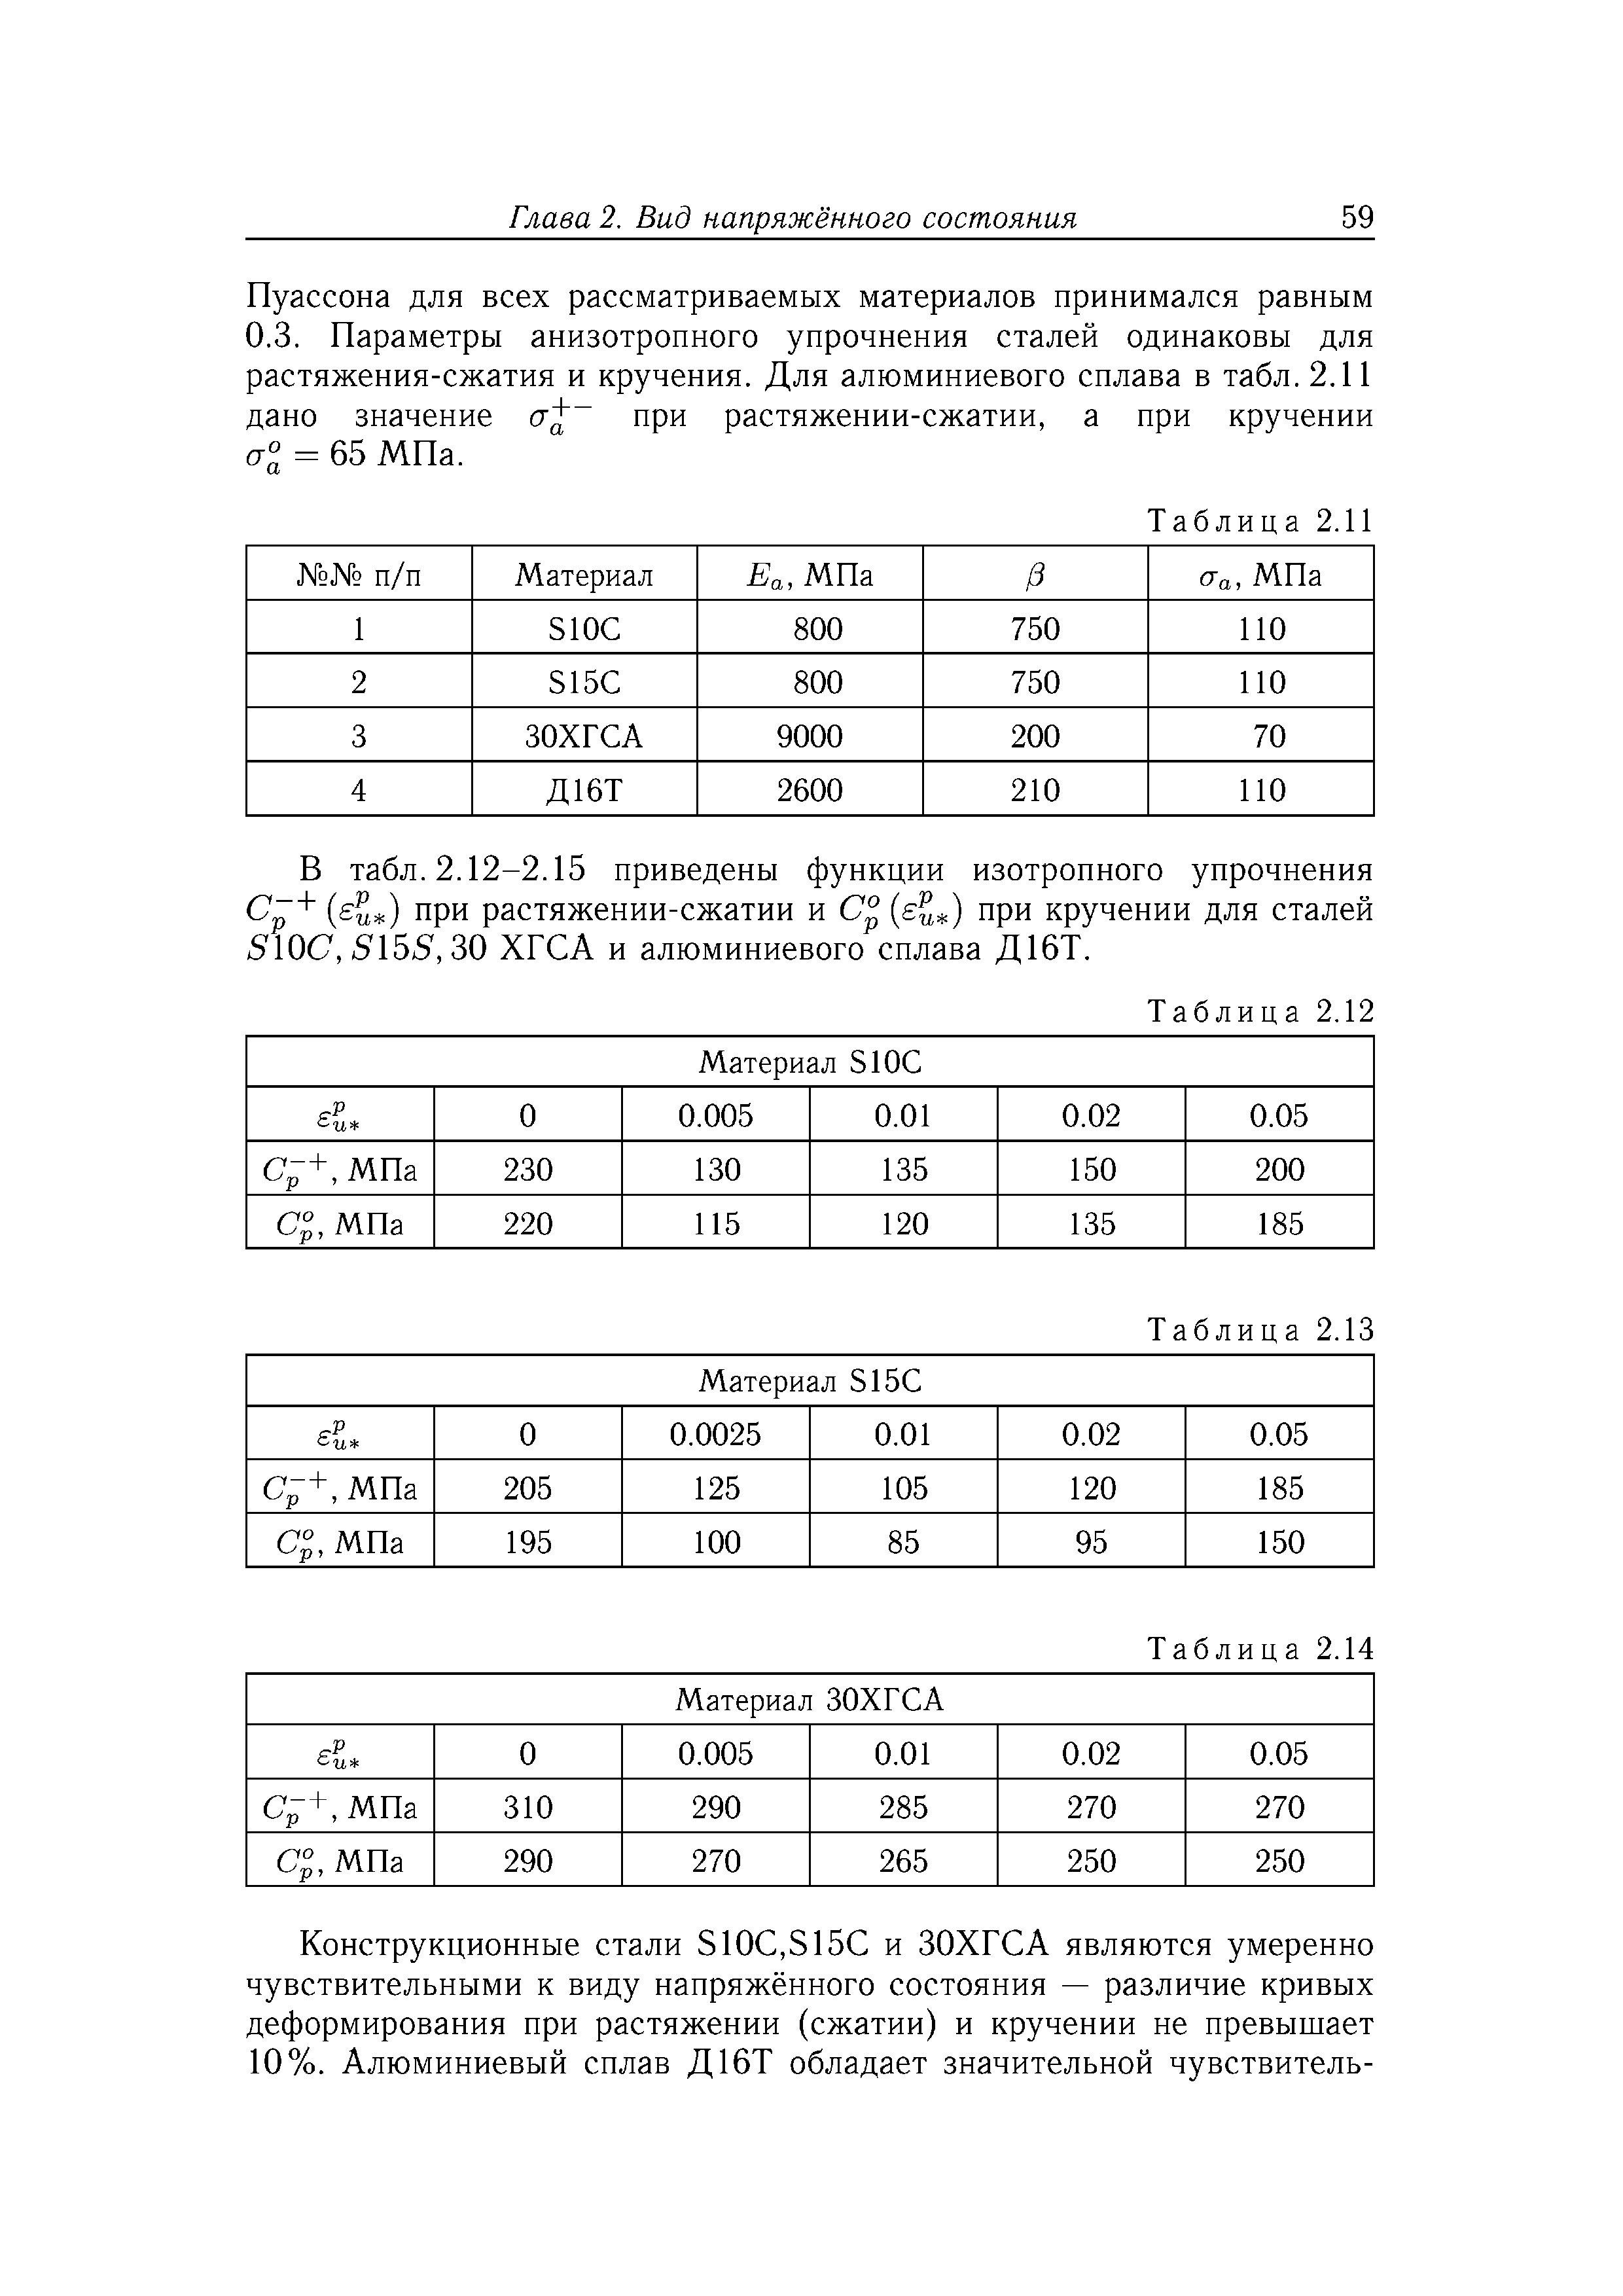 В табл. 2.12-2.15 приведены функции изотропного упрочнения (7 + [eu ) при растяжении-сжатии и С° su ) при кручении для сталей 510(7, 5155,30 ХГСА и алюминиевого сплава Д16Т.
